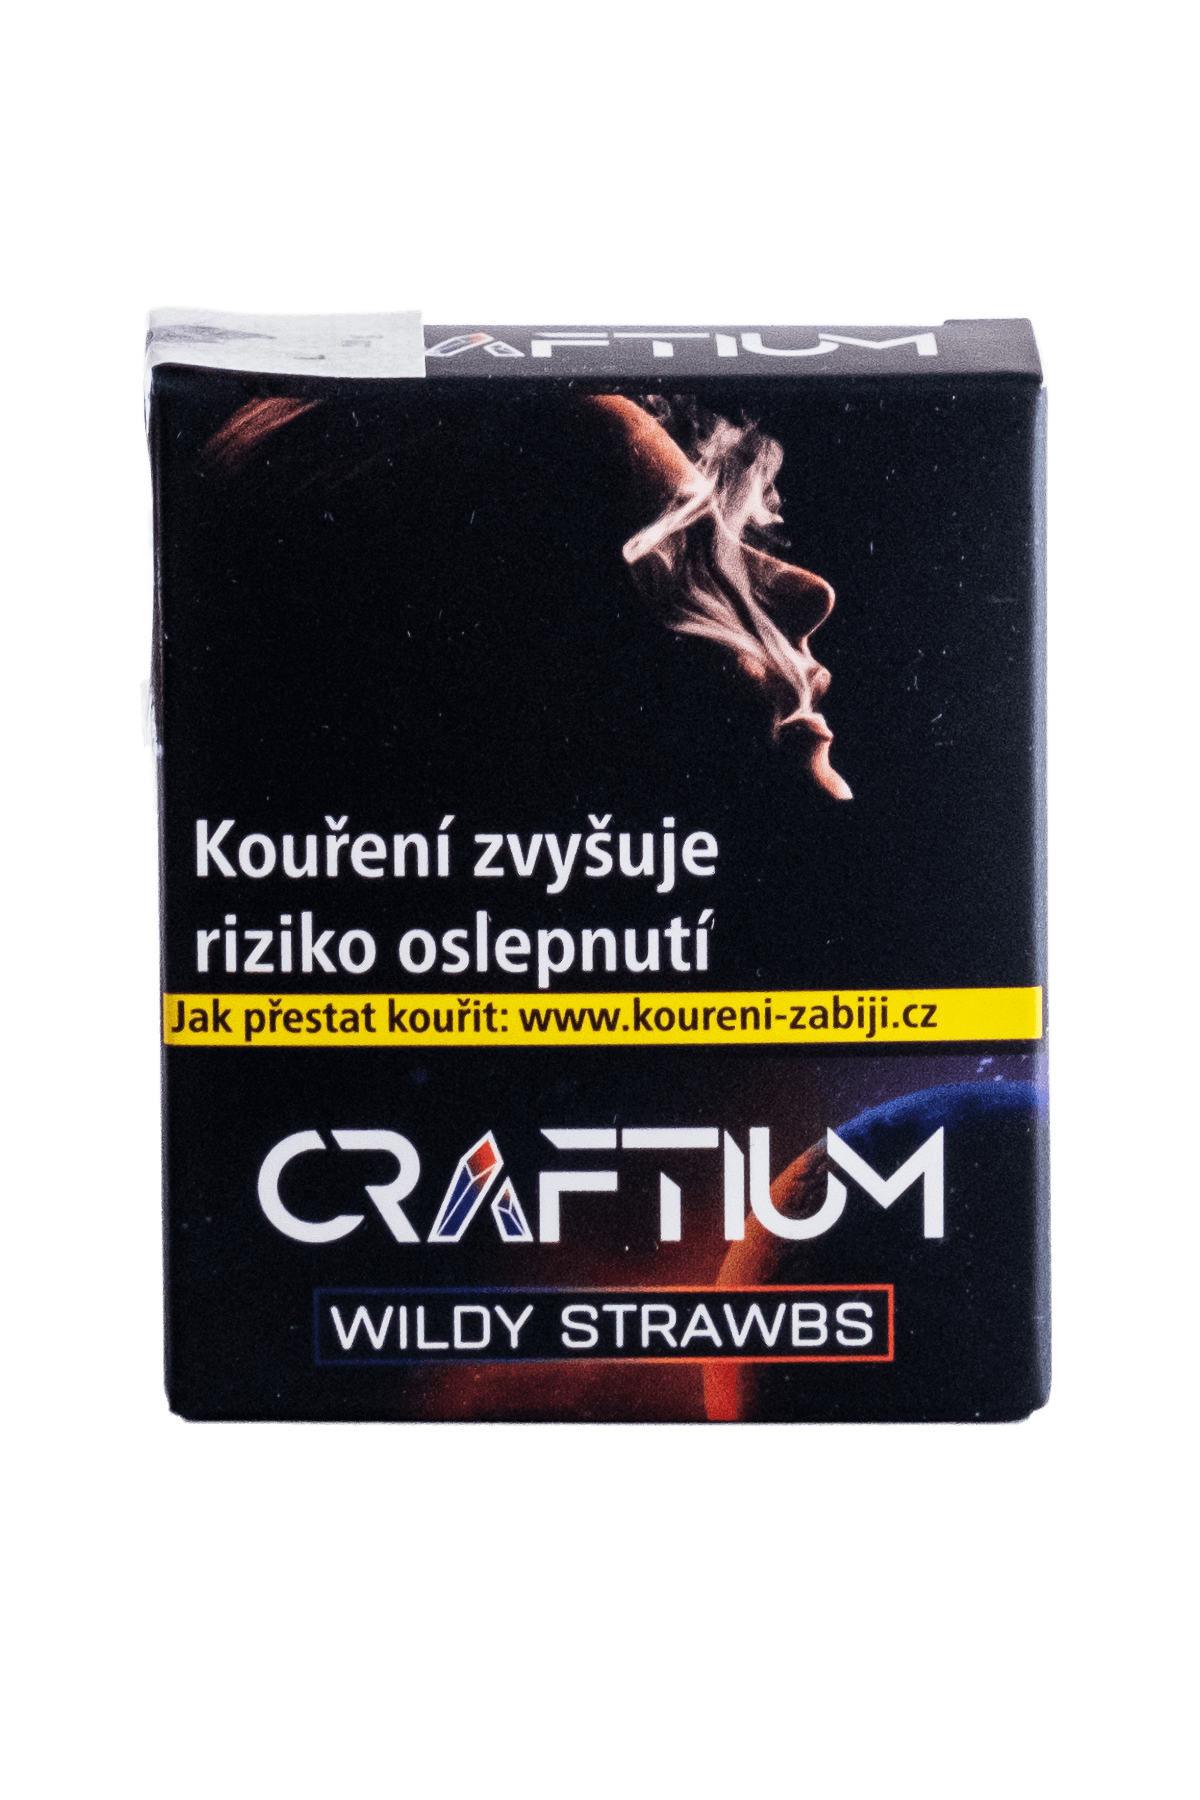 Tabák - Craftium 20g - Wildy Strawbs